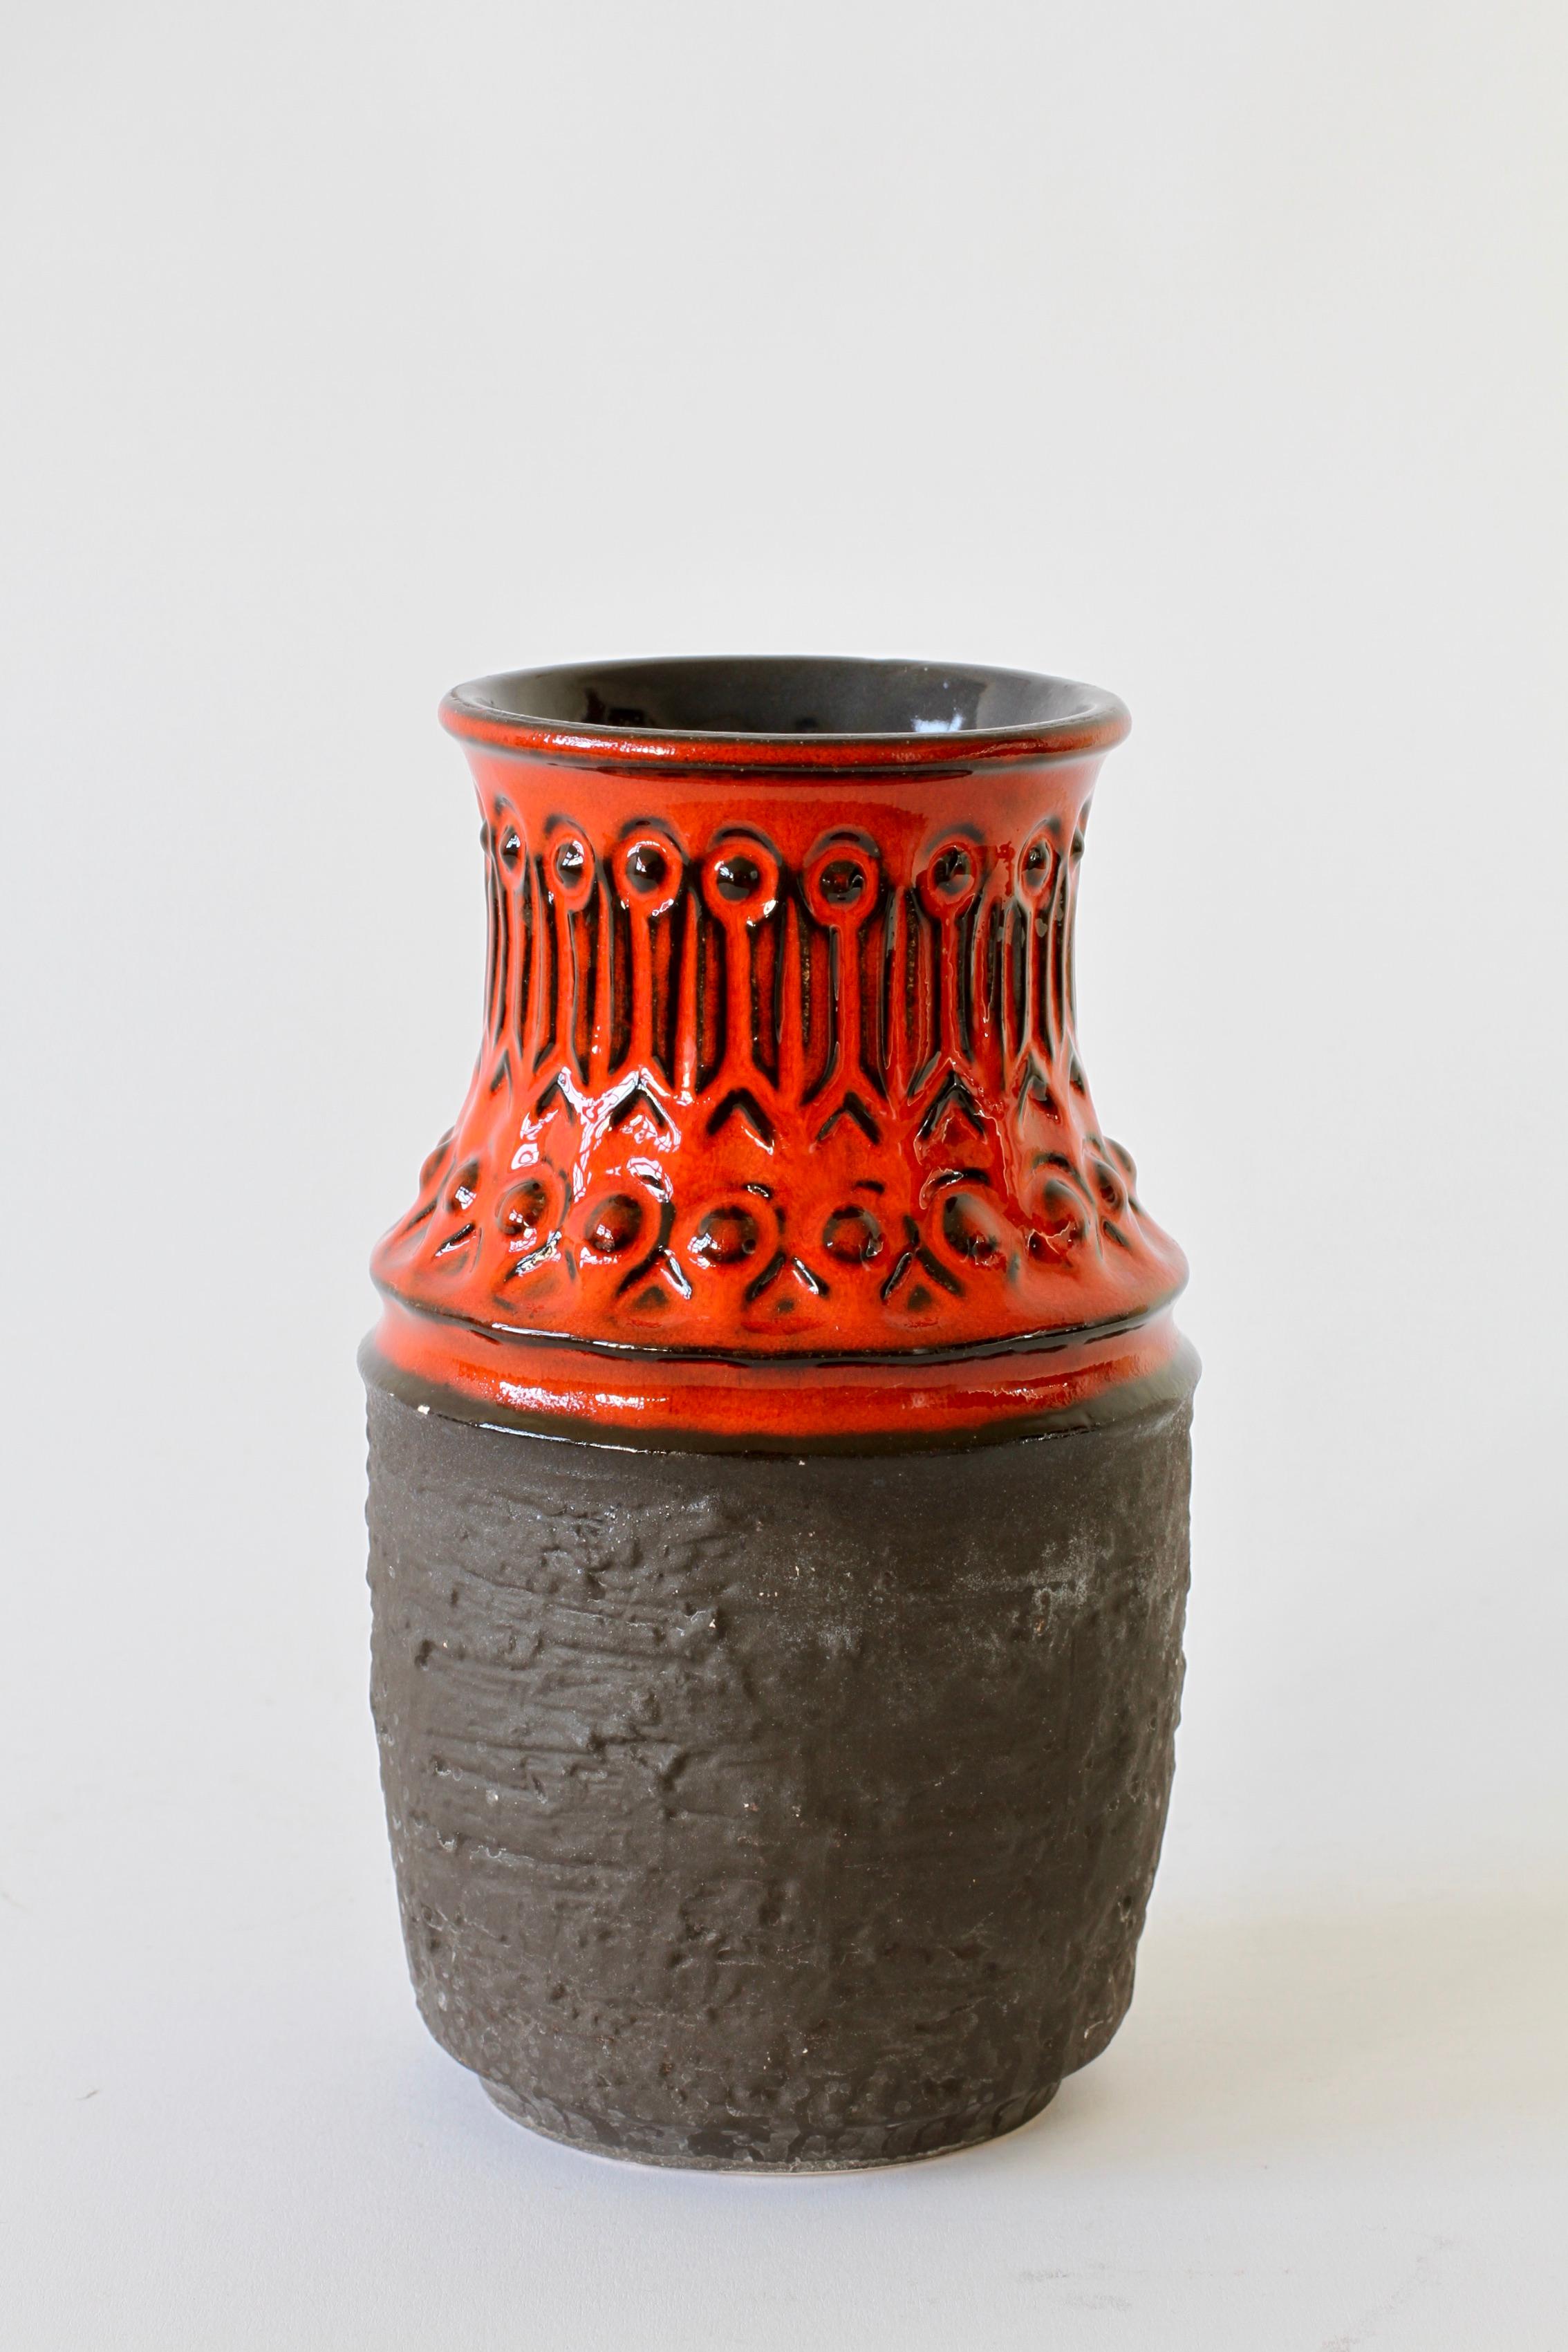 Un magnifique vase en rouge vif et noir mat avec un motif en relief - numéro de forme 1 582 20 - produit par la poterie Jasba au milieu des années 1970.

Ce vase fait une déclaration fantastique et frappante lorsqu'il est exposé sur des tables ou